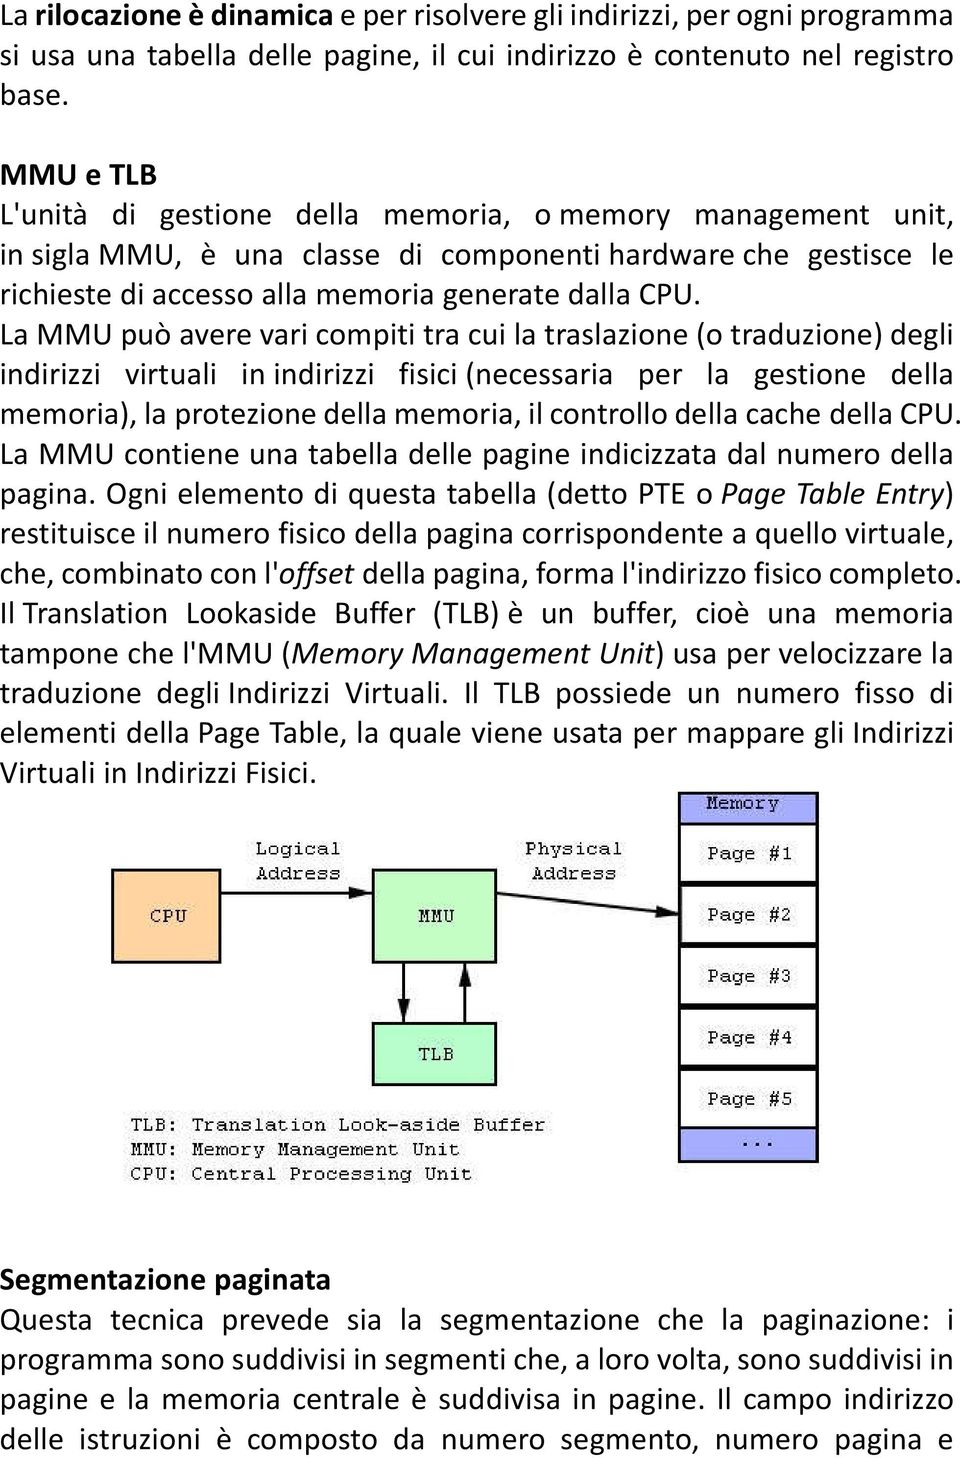 La MMU può avere vari compiti tra cui la traslazione (o traduzione) degli indirizzi virtuali in indirizzi fisici (necessaria per la gestione della memoria), la protezione della memoria, il controllo